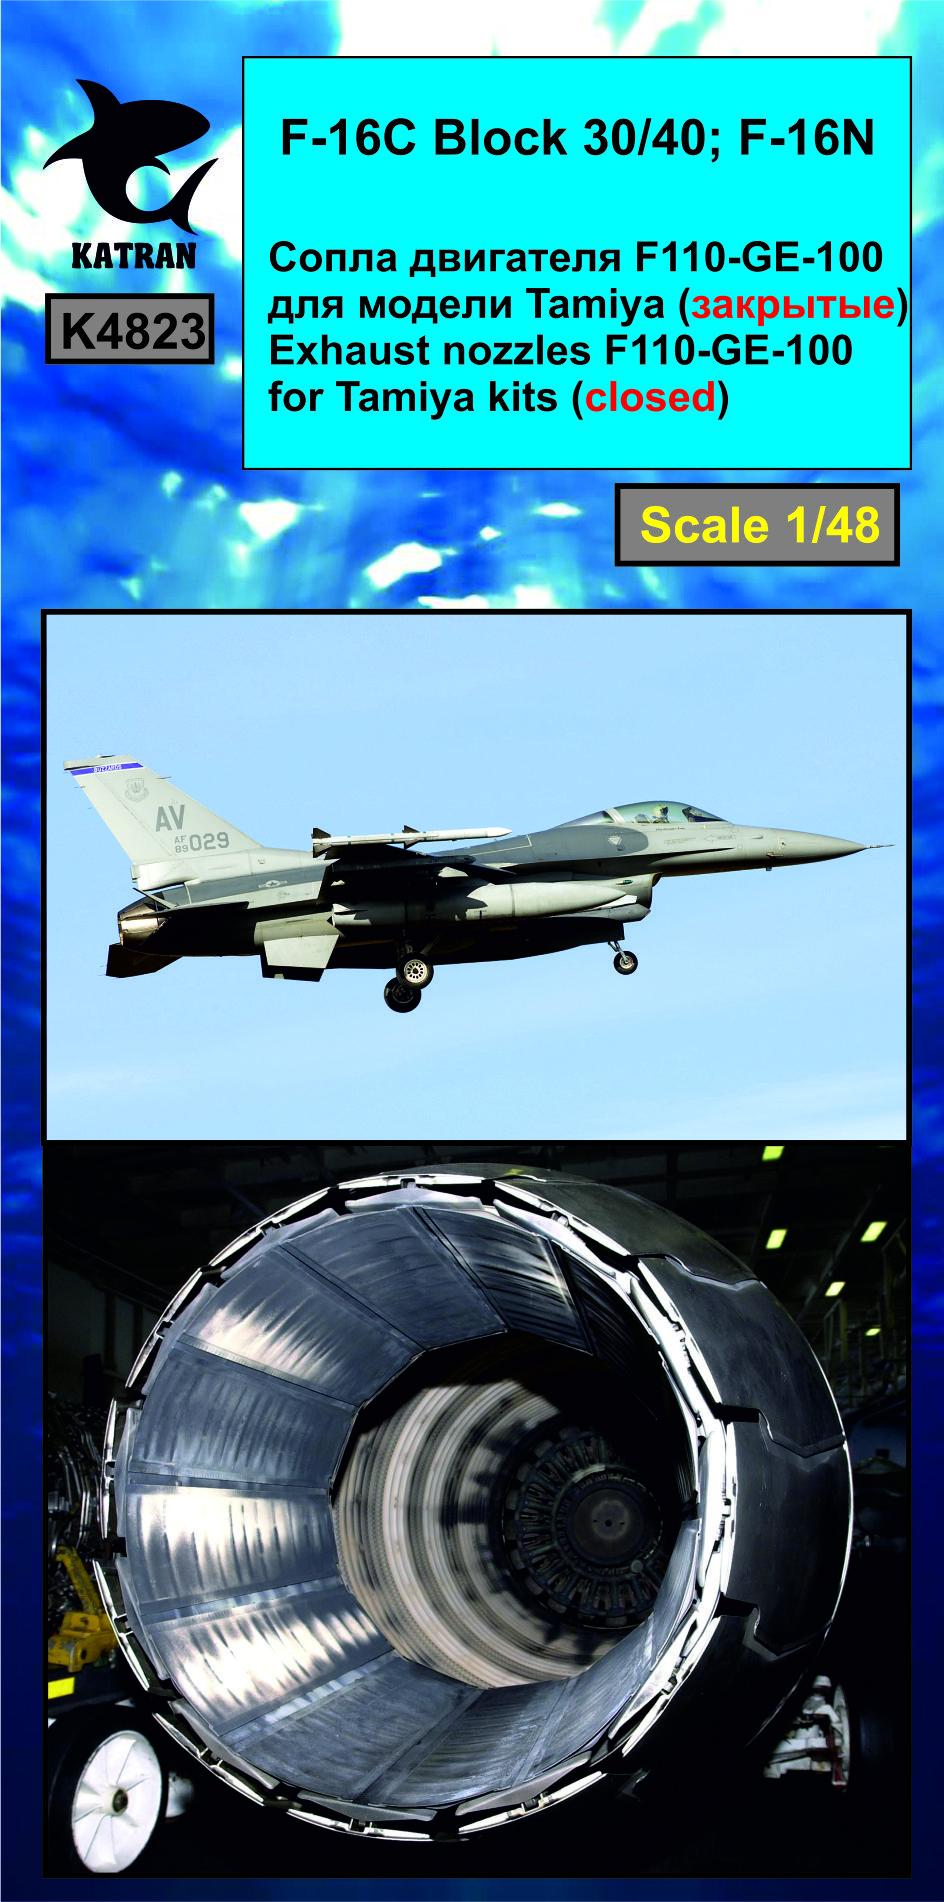 Дополнения из смолы 1/48 F-16C Block 30/40 F-16N сопла двигателя F-110-GE-100 (closed) (Katran) 